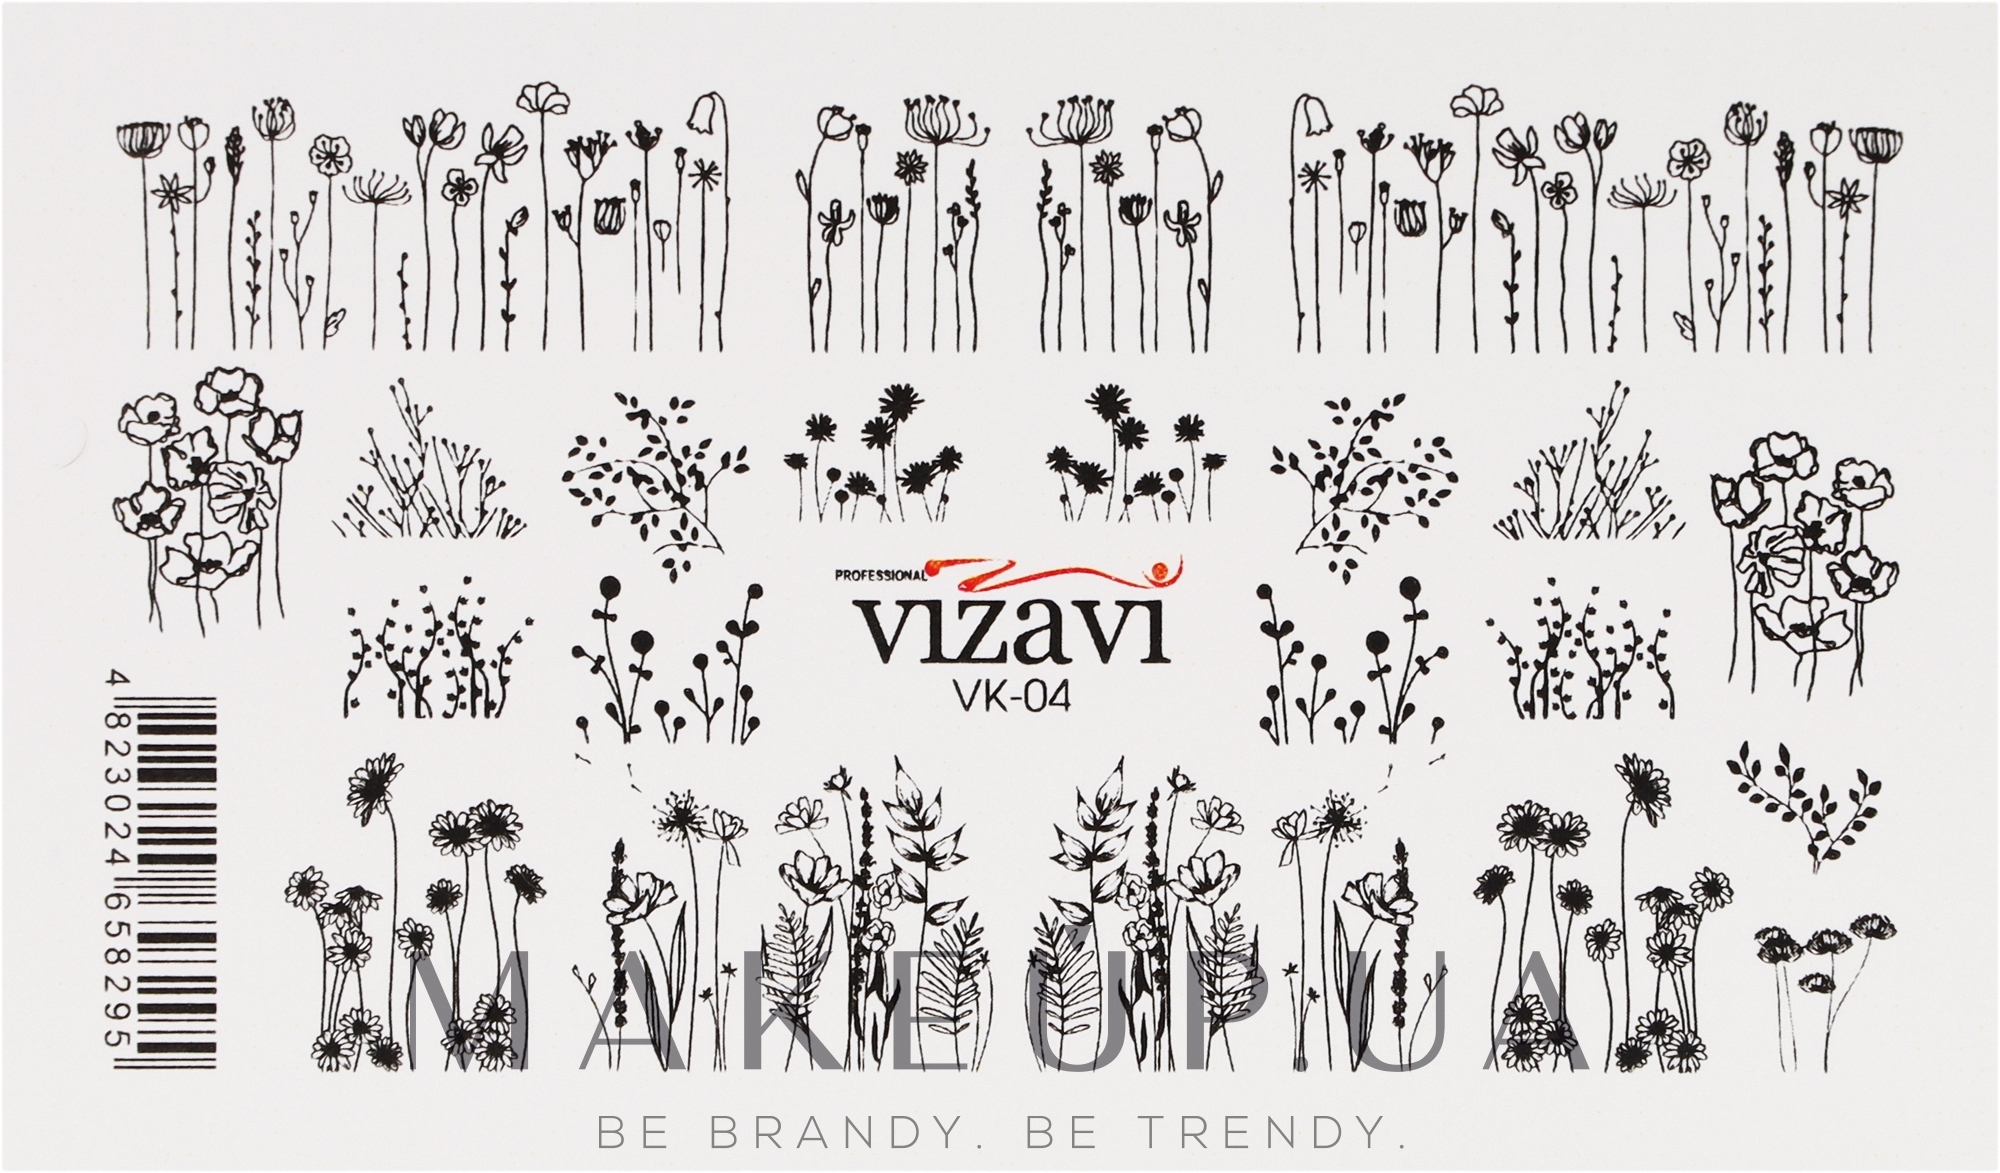 Водные наклейки для ногтей, VK - Vizavi Professional — фото VK - 04